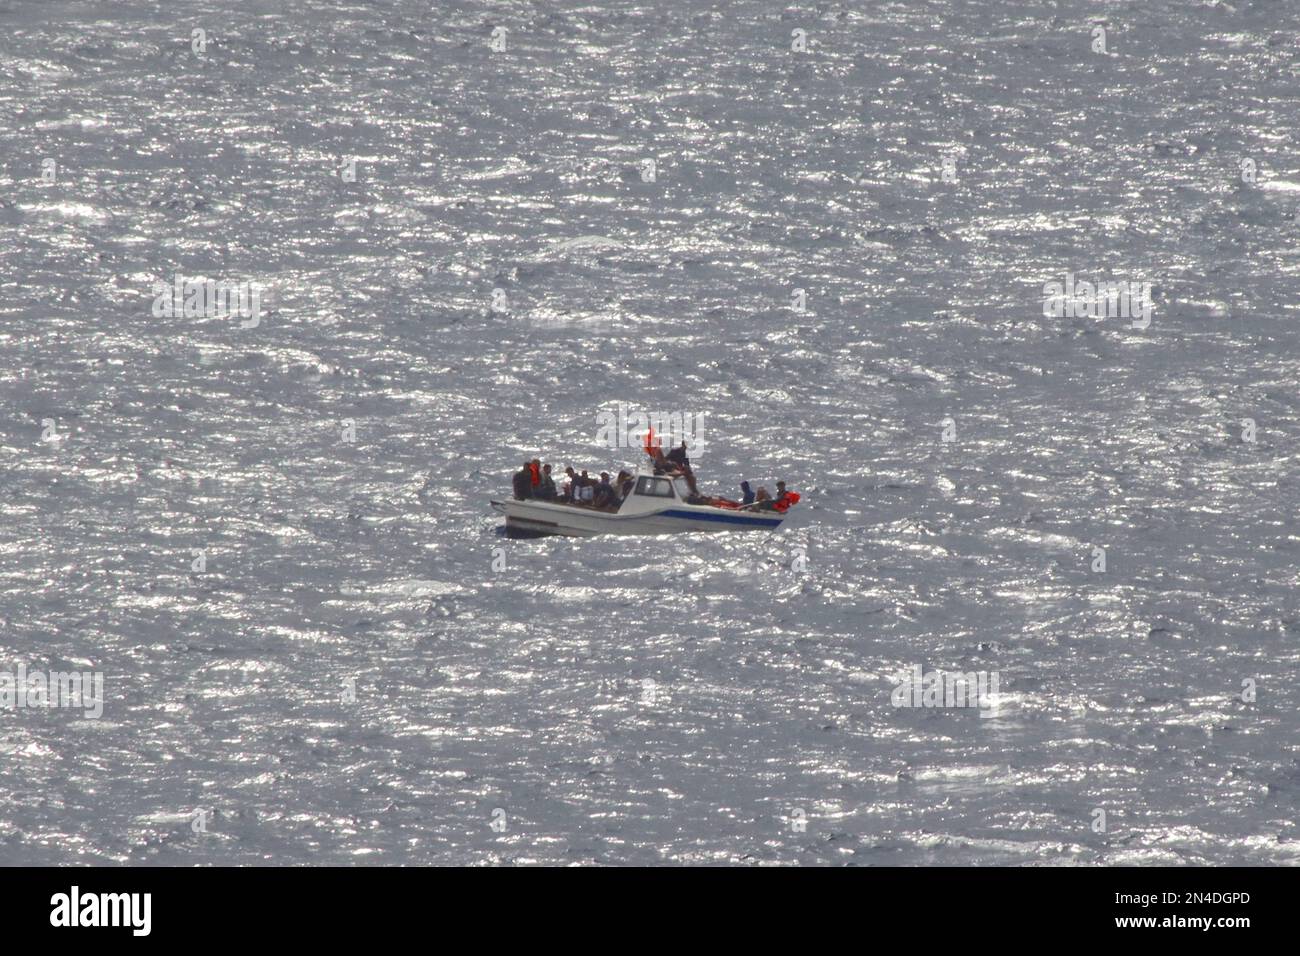 Les migrants algériens de sexe masculin brandirent des gilets de sauvetage pour attirer l'attention, ayant perdu de l'énergie sur leur bateau alors qu'il dévie dans la mer Méditerranée, août 2022. Banque D'Images